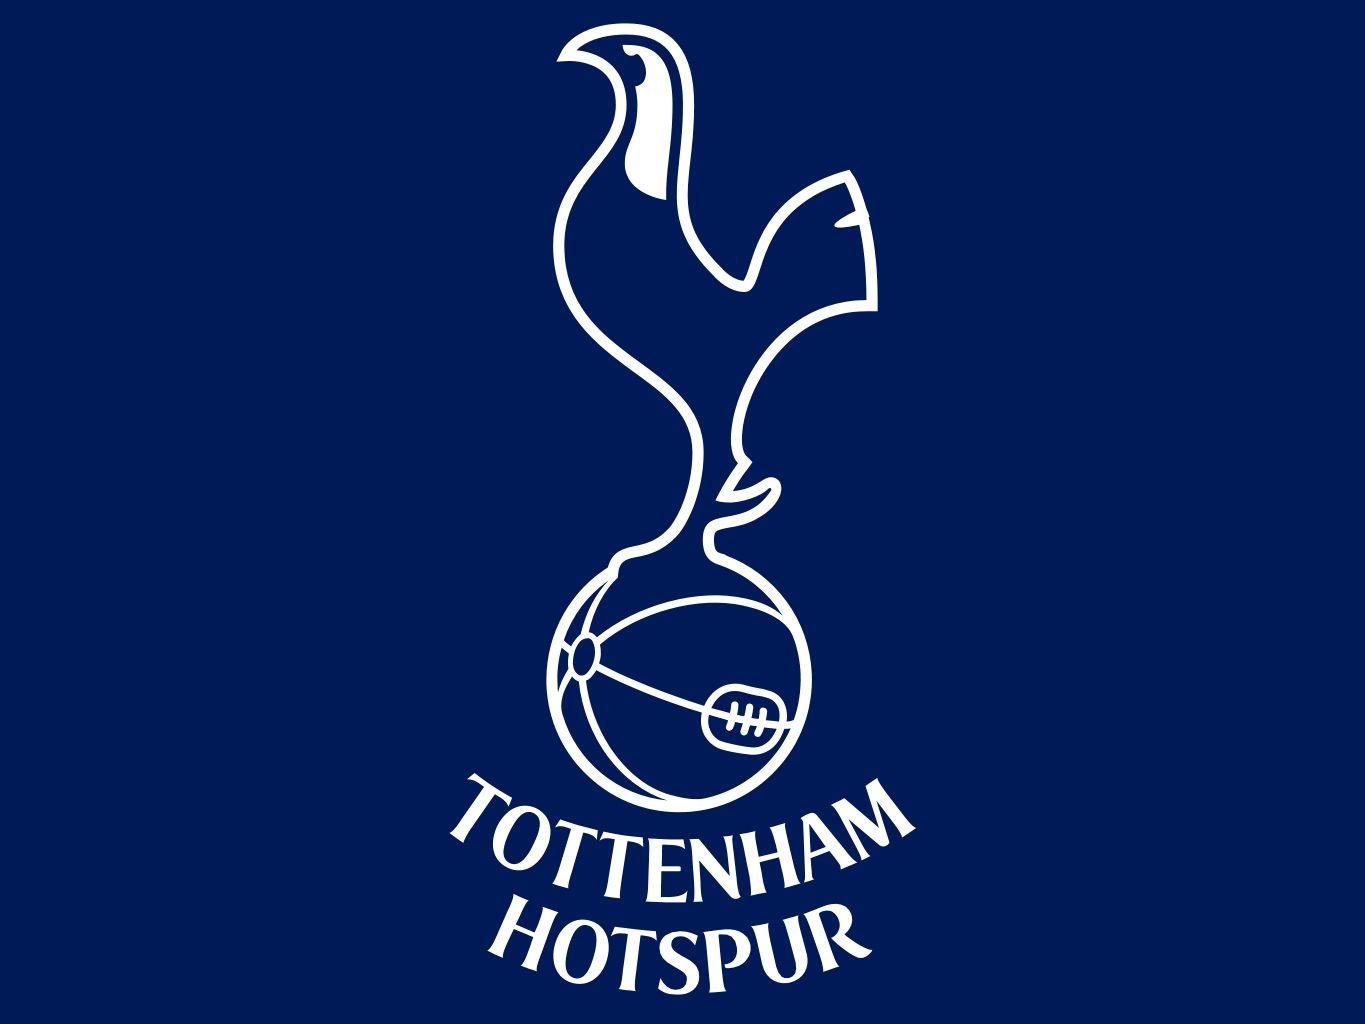 Tottenham Hotspur Logo - tottenham spur logo 1365x1024px Wallpaper Download. Ebs367